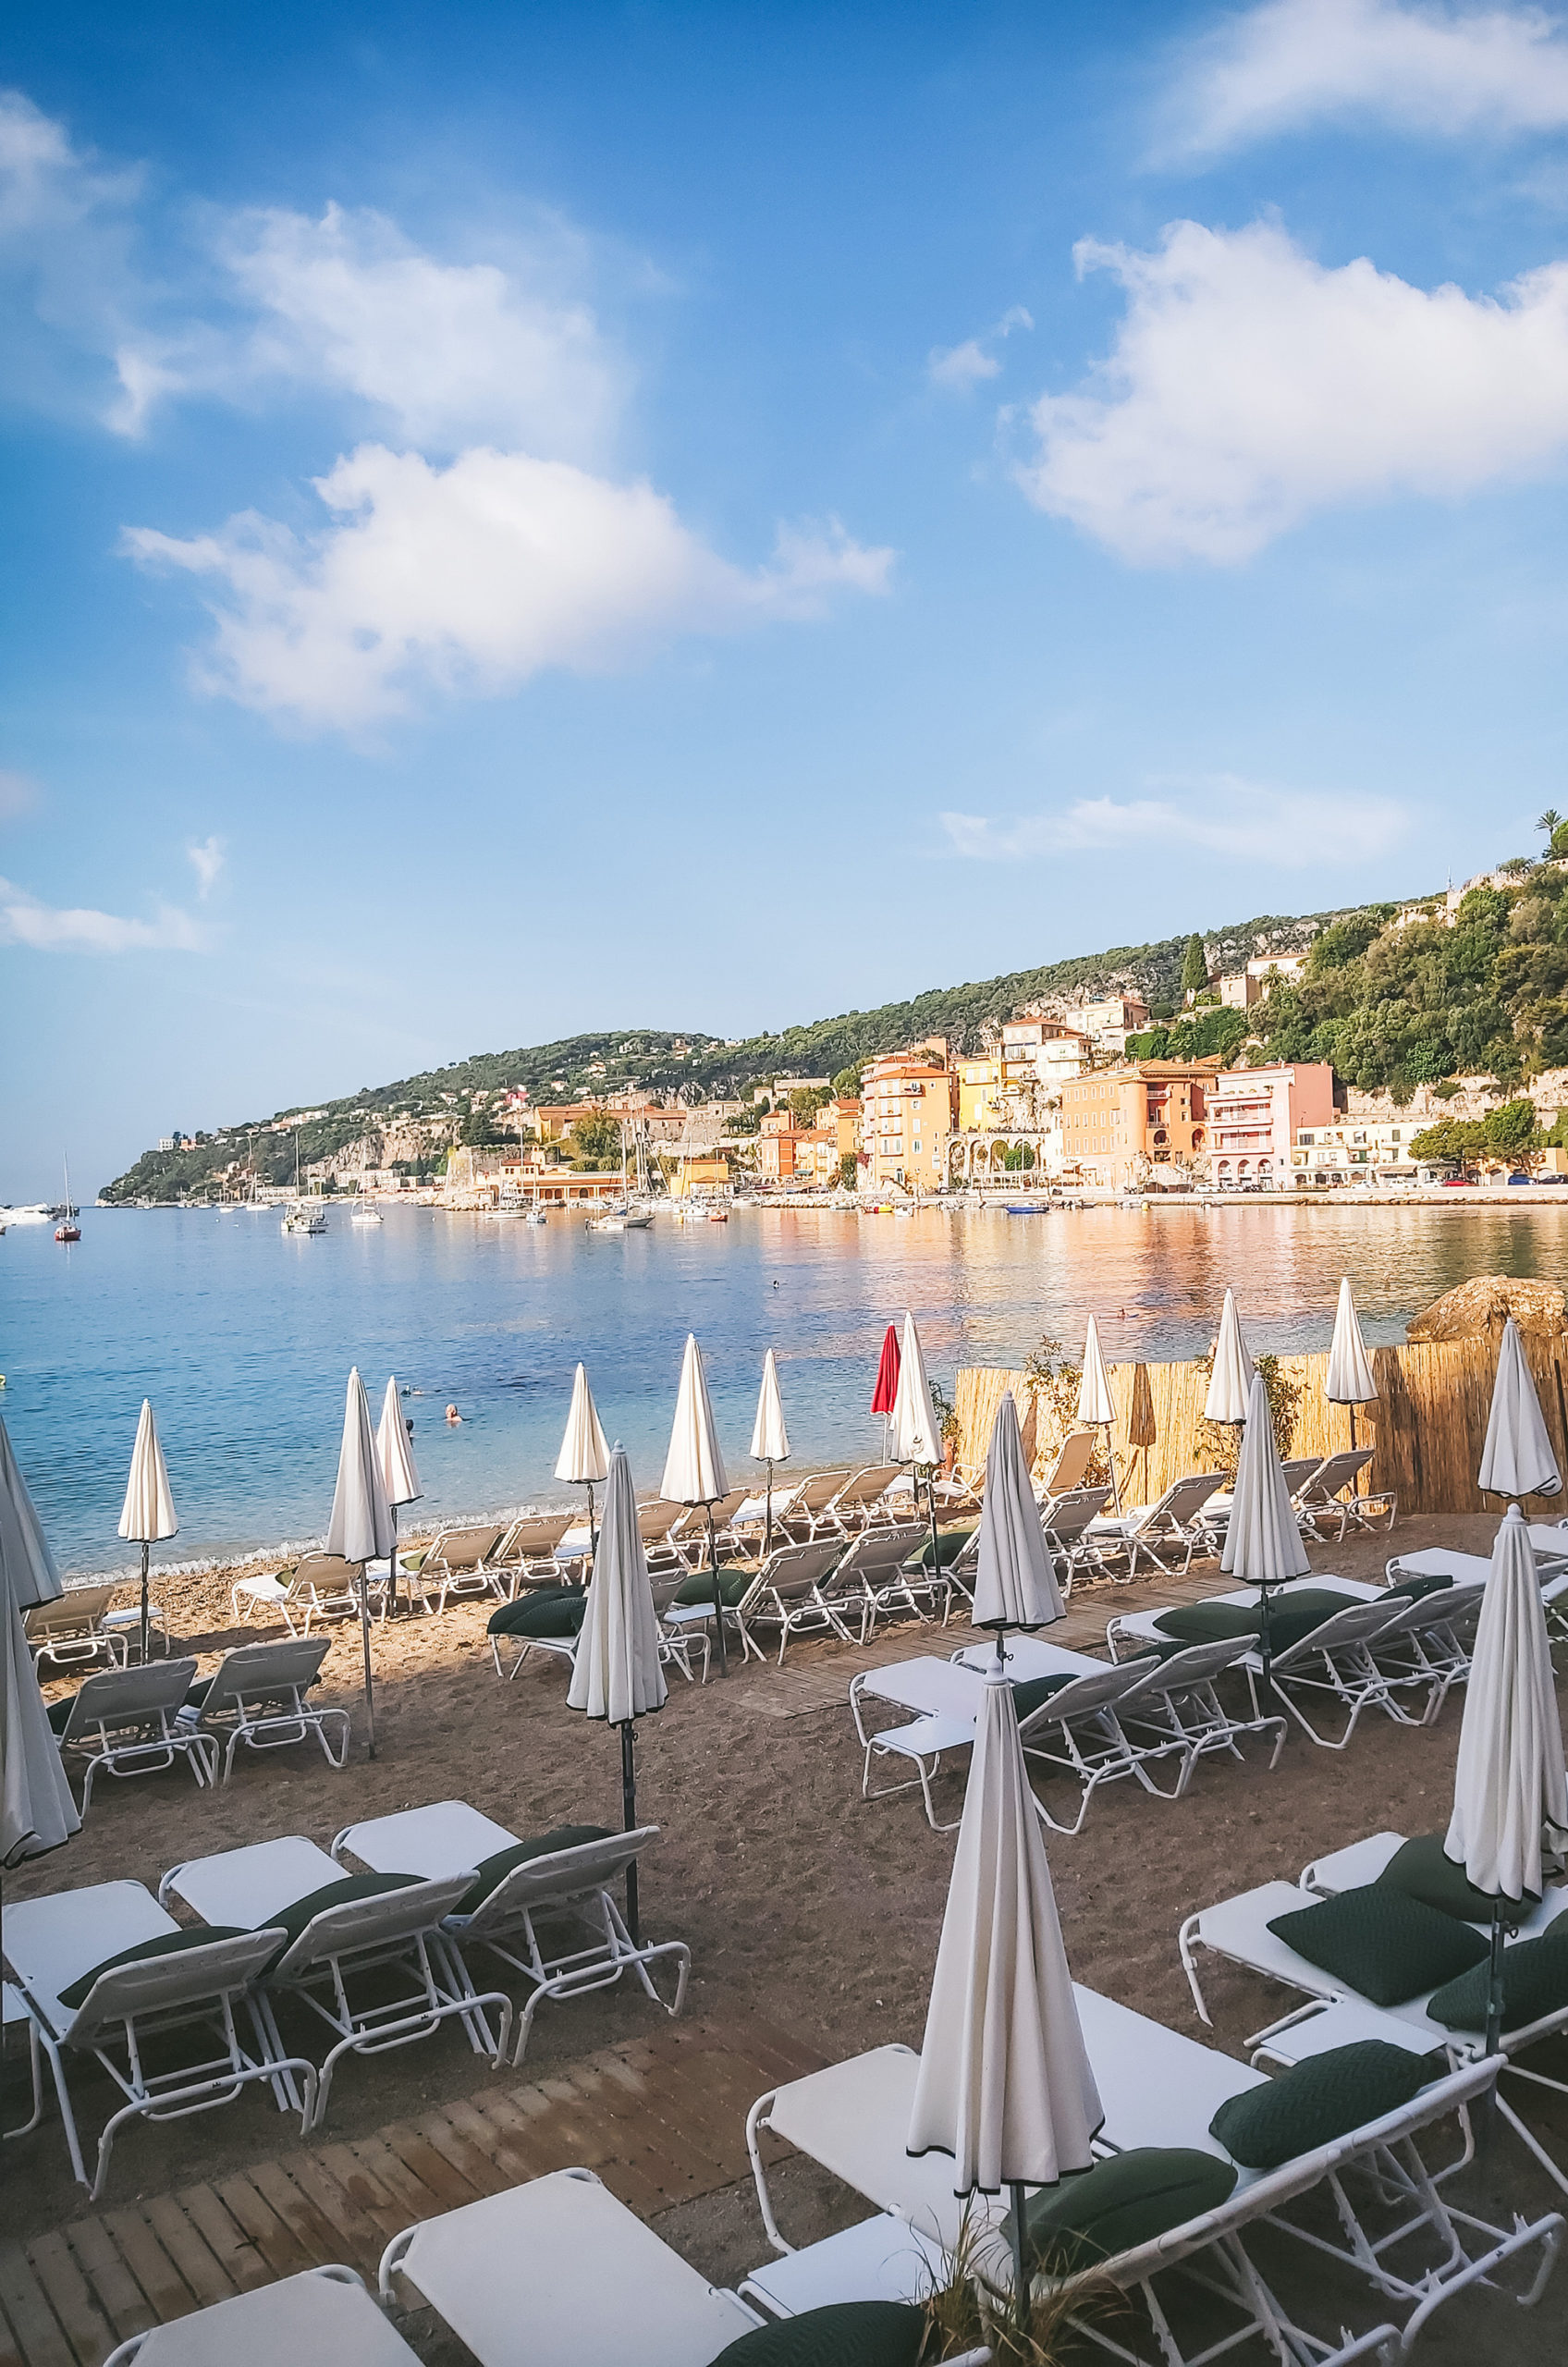 5 choses à faire sans voiture dans la Riviera autour de Nice - Villefranche sur mer